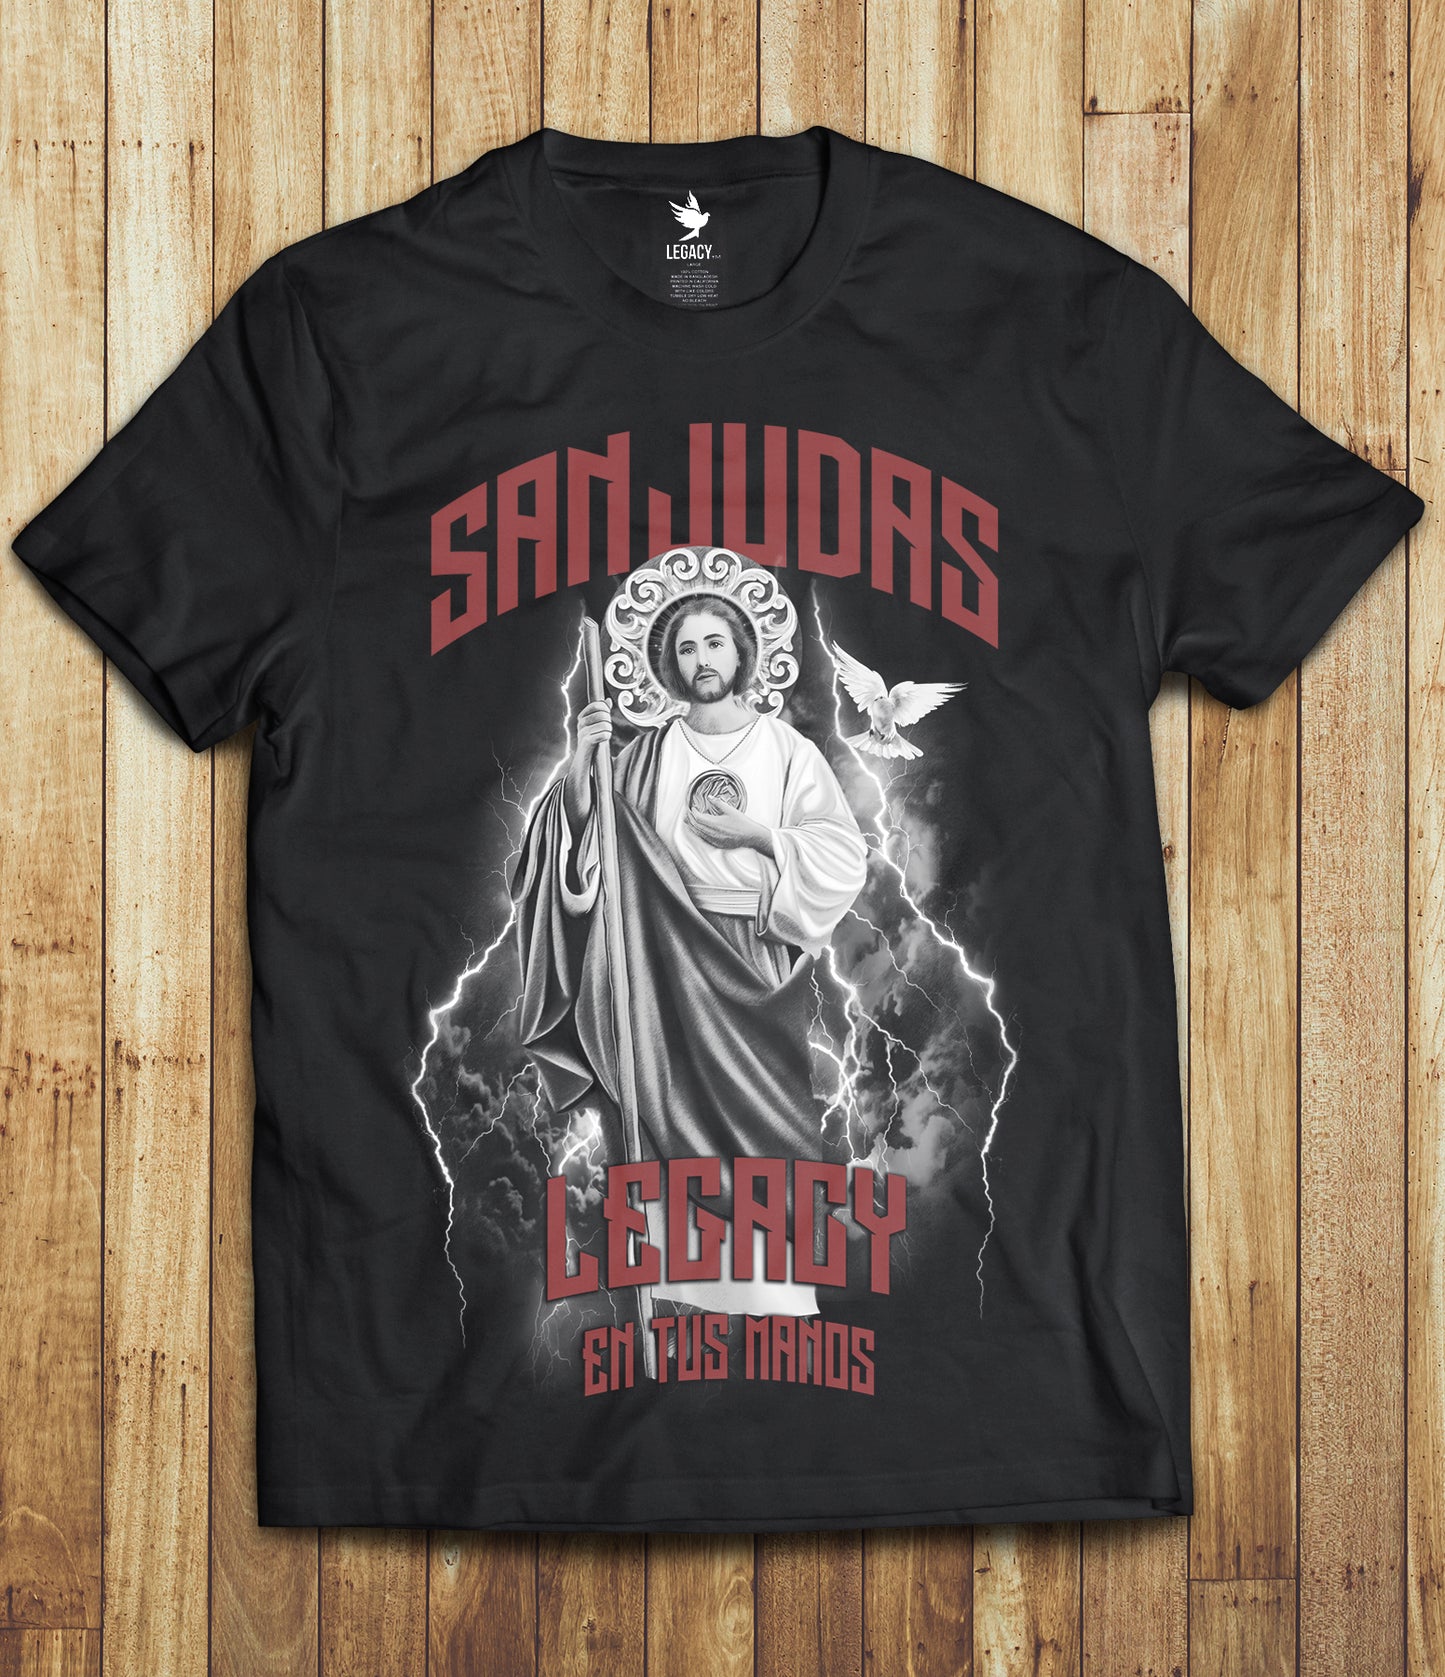 San Judas Tribute Shirt (Black)